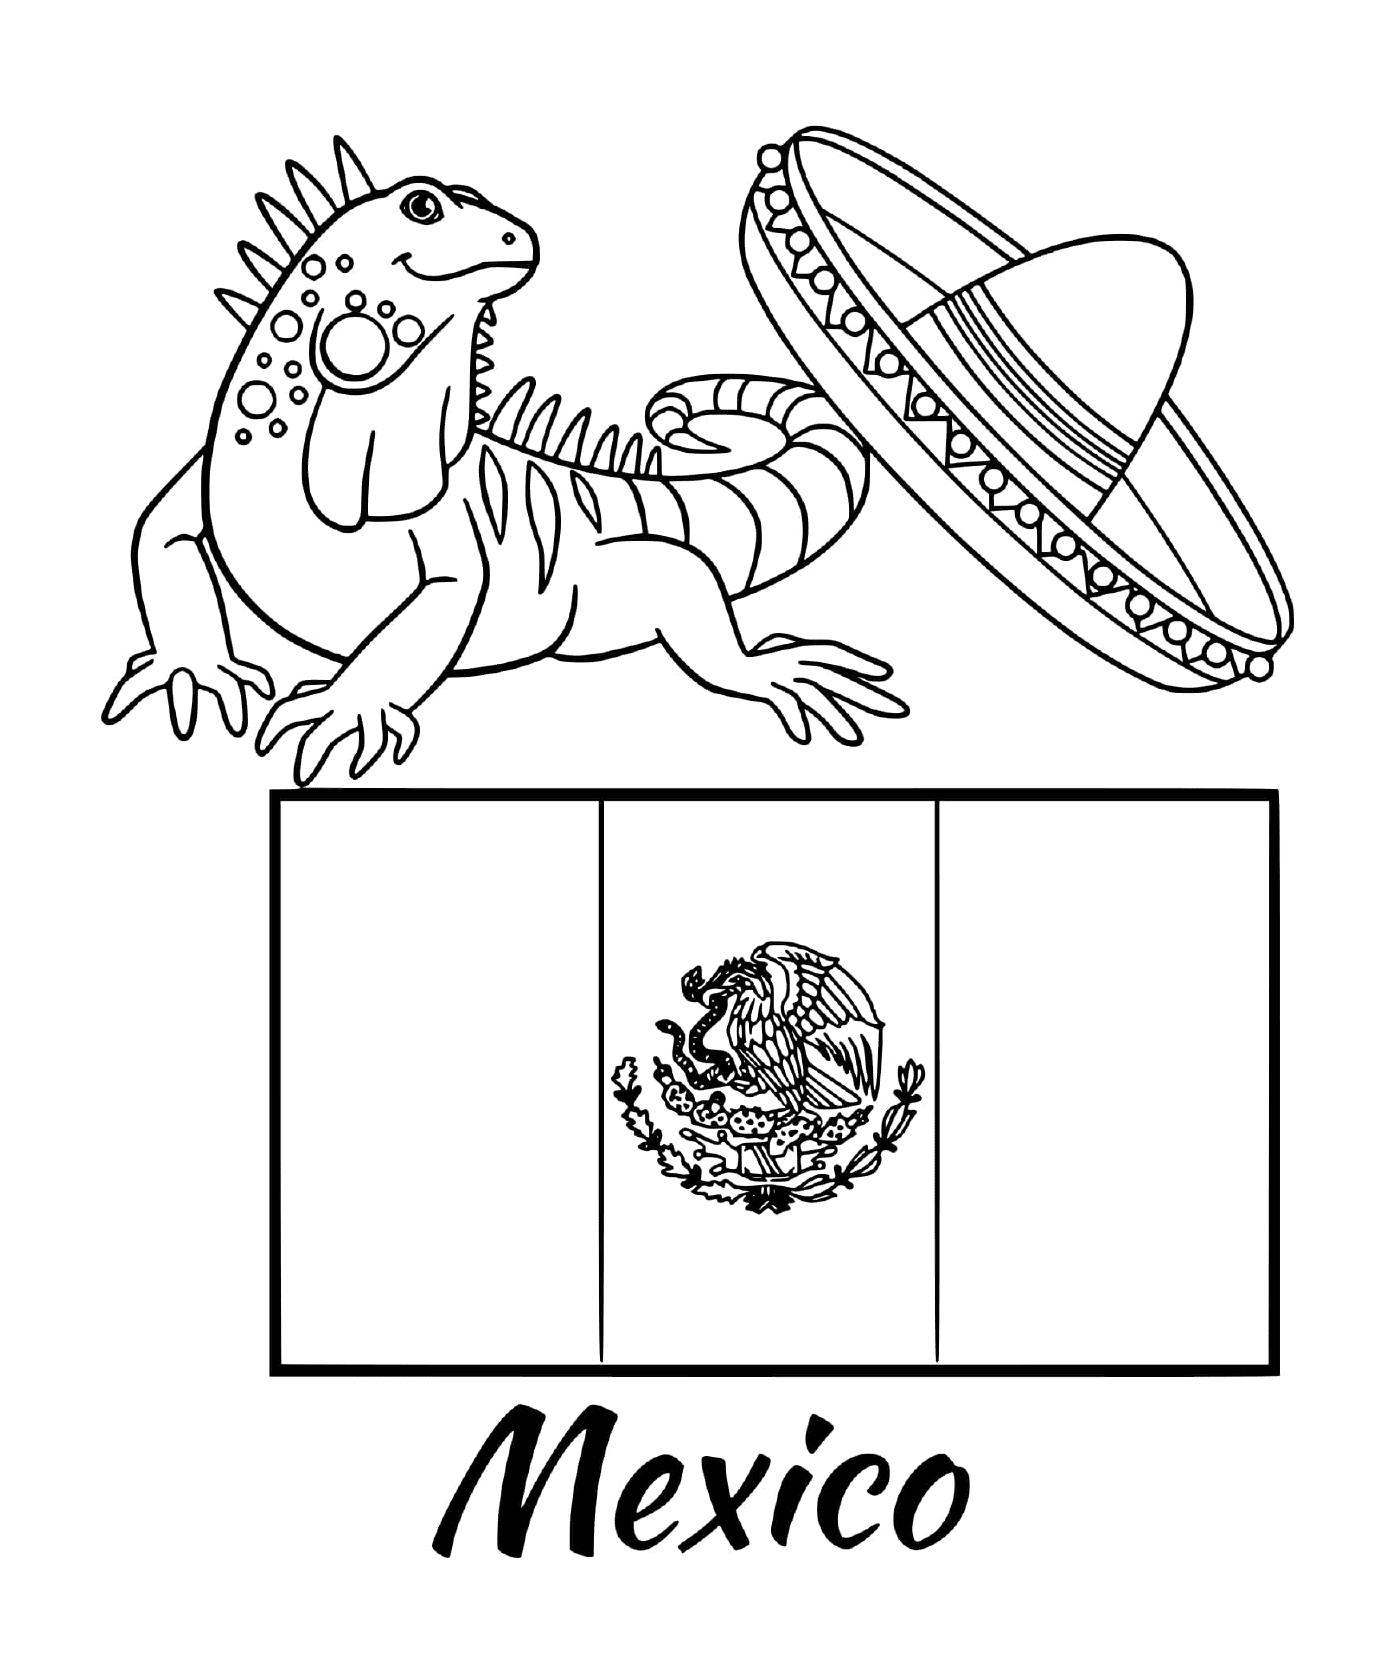  挂有蜥蜴的墨西哥国旗 